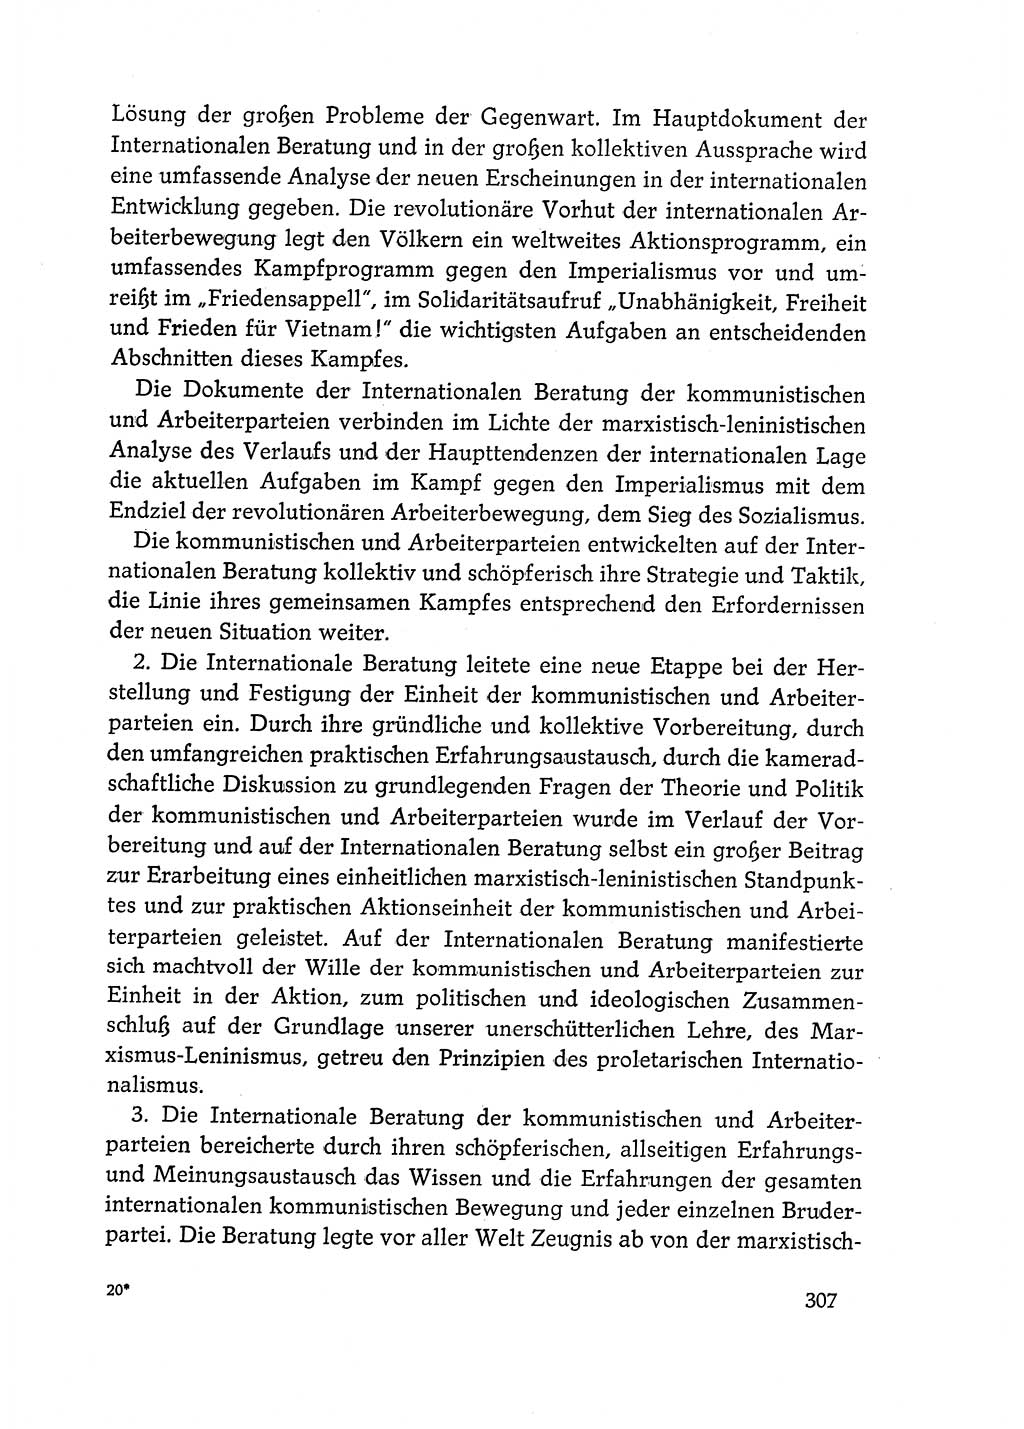 Dokumente der Sozialistischen Einheitspartei Deutschlands (SED) [Deutsche Demokratische Republik (DDR)] 1968-1969, Seite 307 (Dok. SED DDR 1968-1969, S. 307)